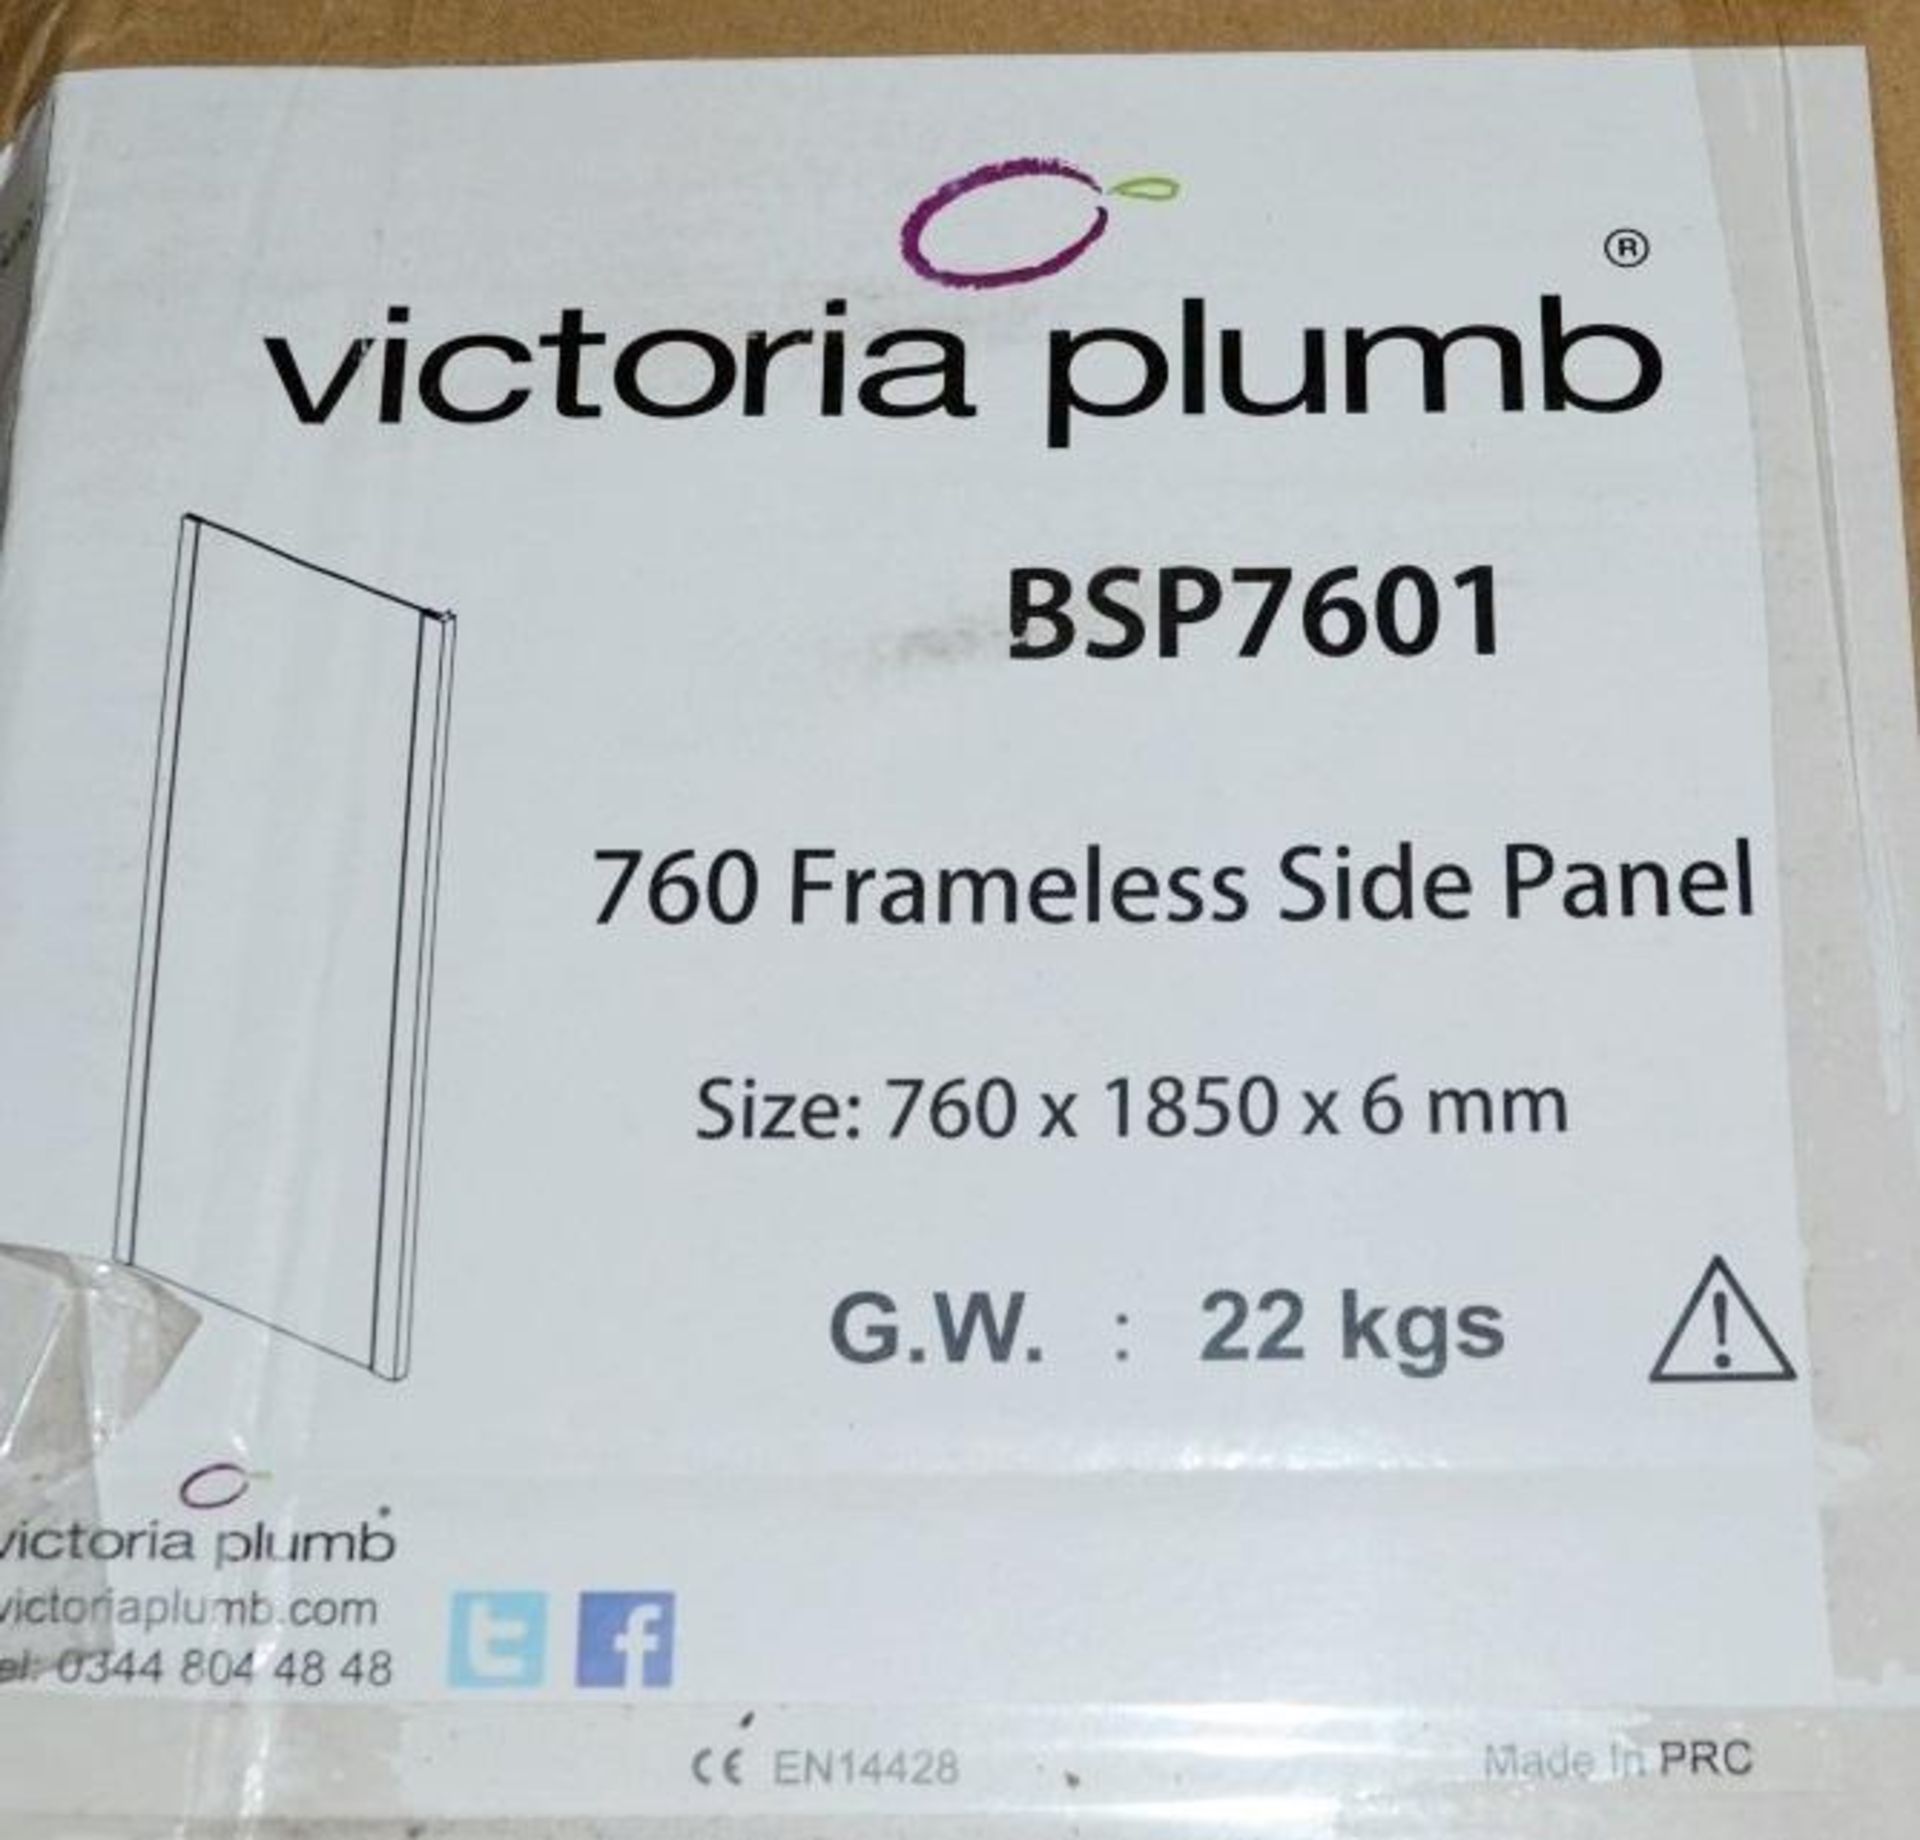 1 x 760mm Frameless Shower Side Panel - BSP7601 - Dimensions: 760 x 1850 x 6cm - Ref: JTY001 - New / - Image 2 of 2